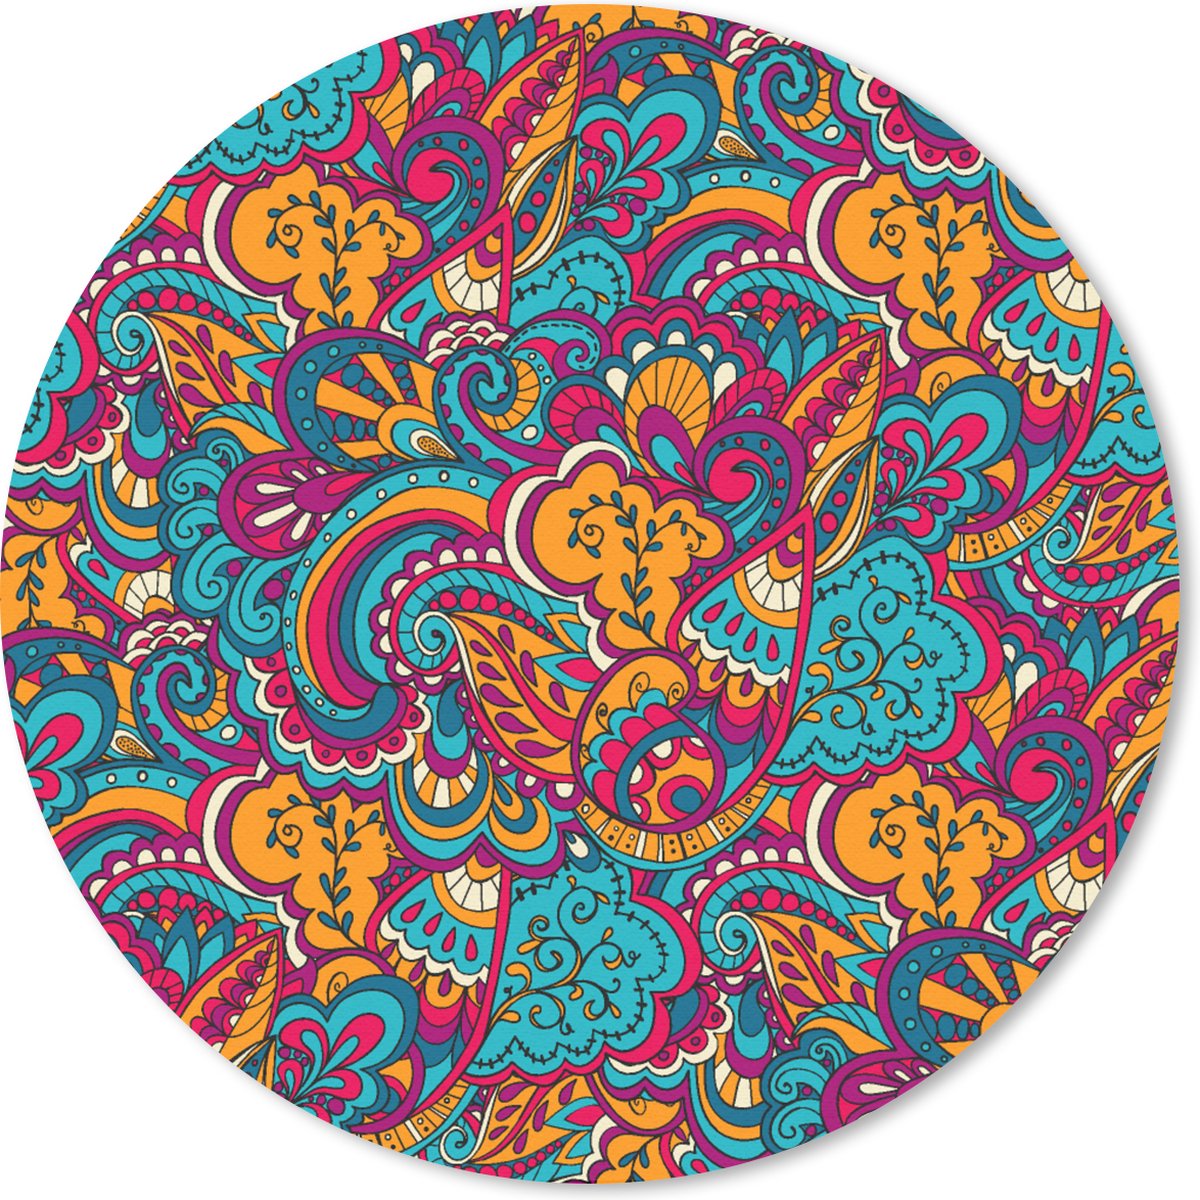 Muismat - Mousepad - Rond - Hippie - Flora - Abstract - Patroon - 40x40 cm - Ronde muismat